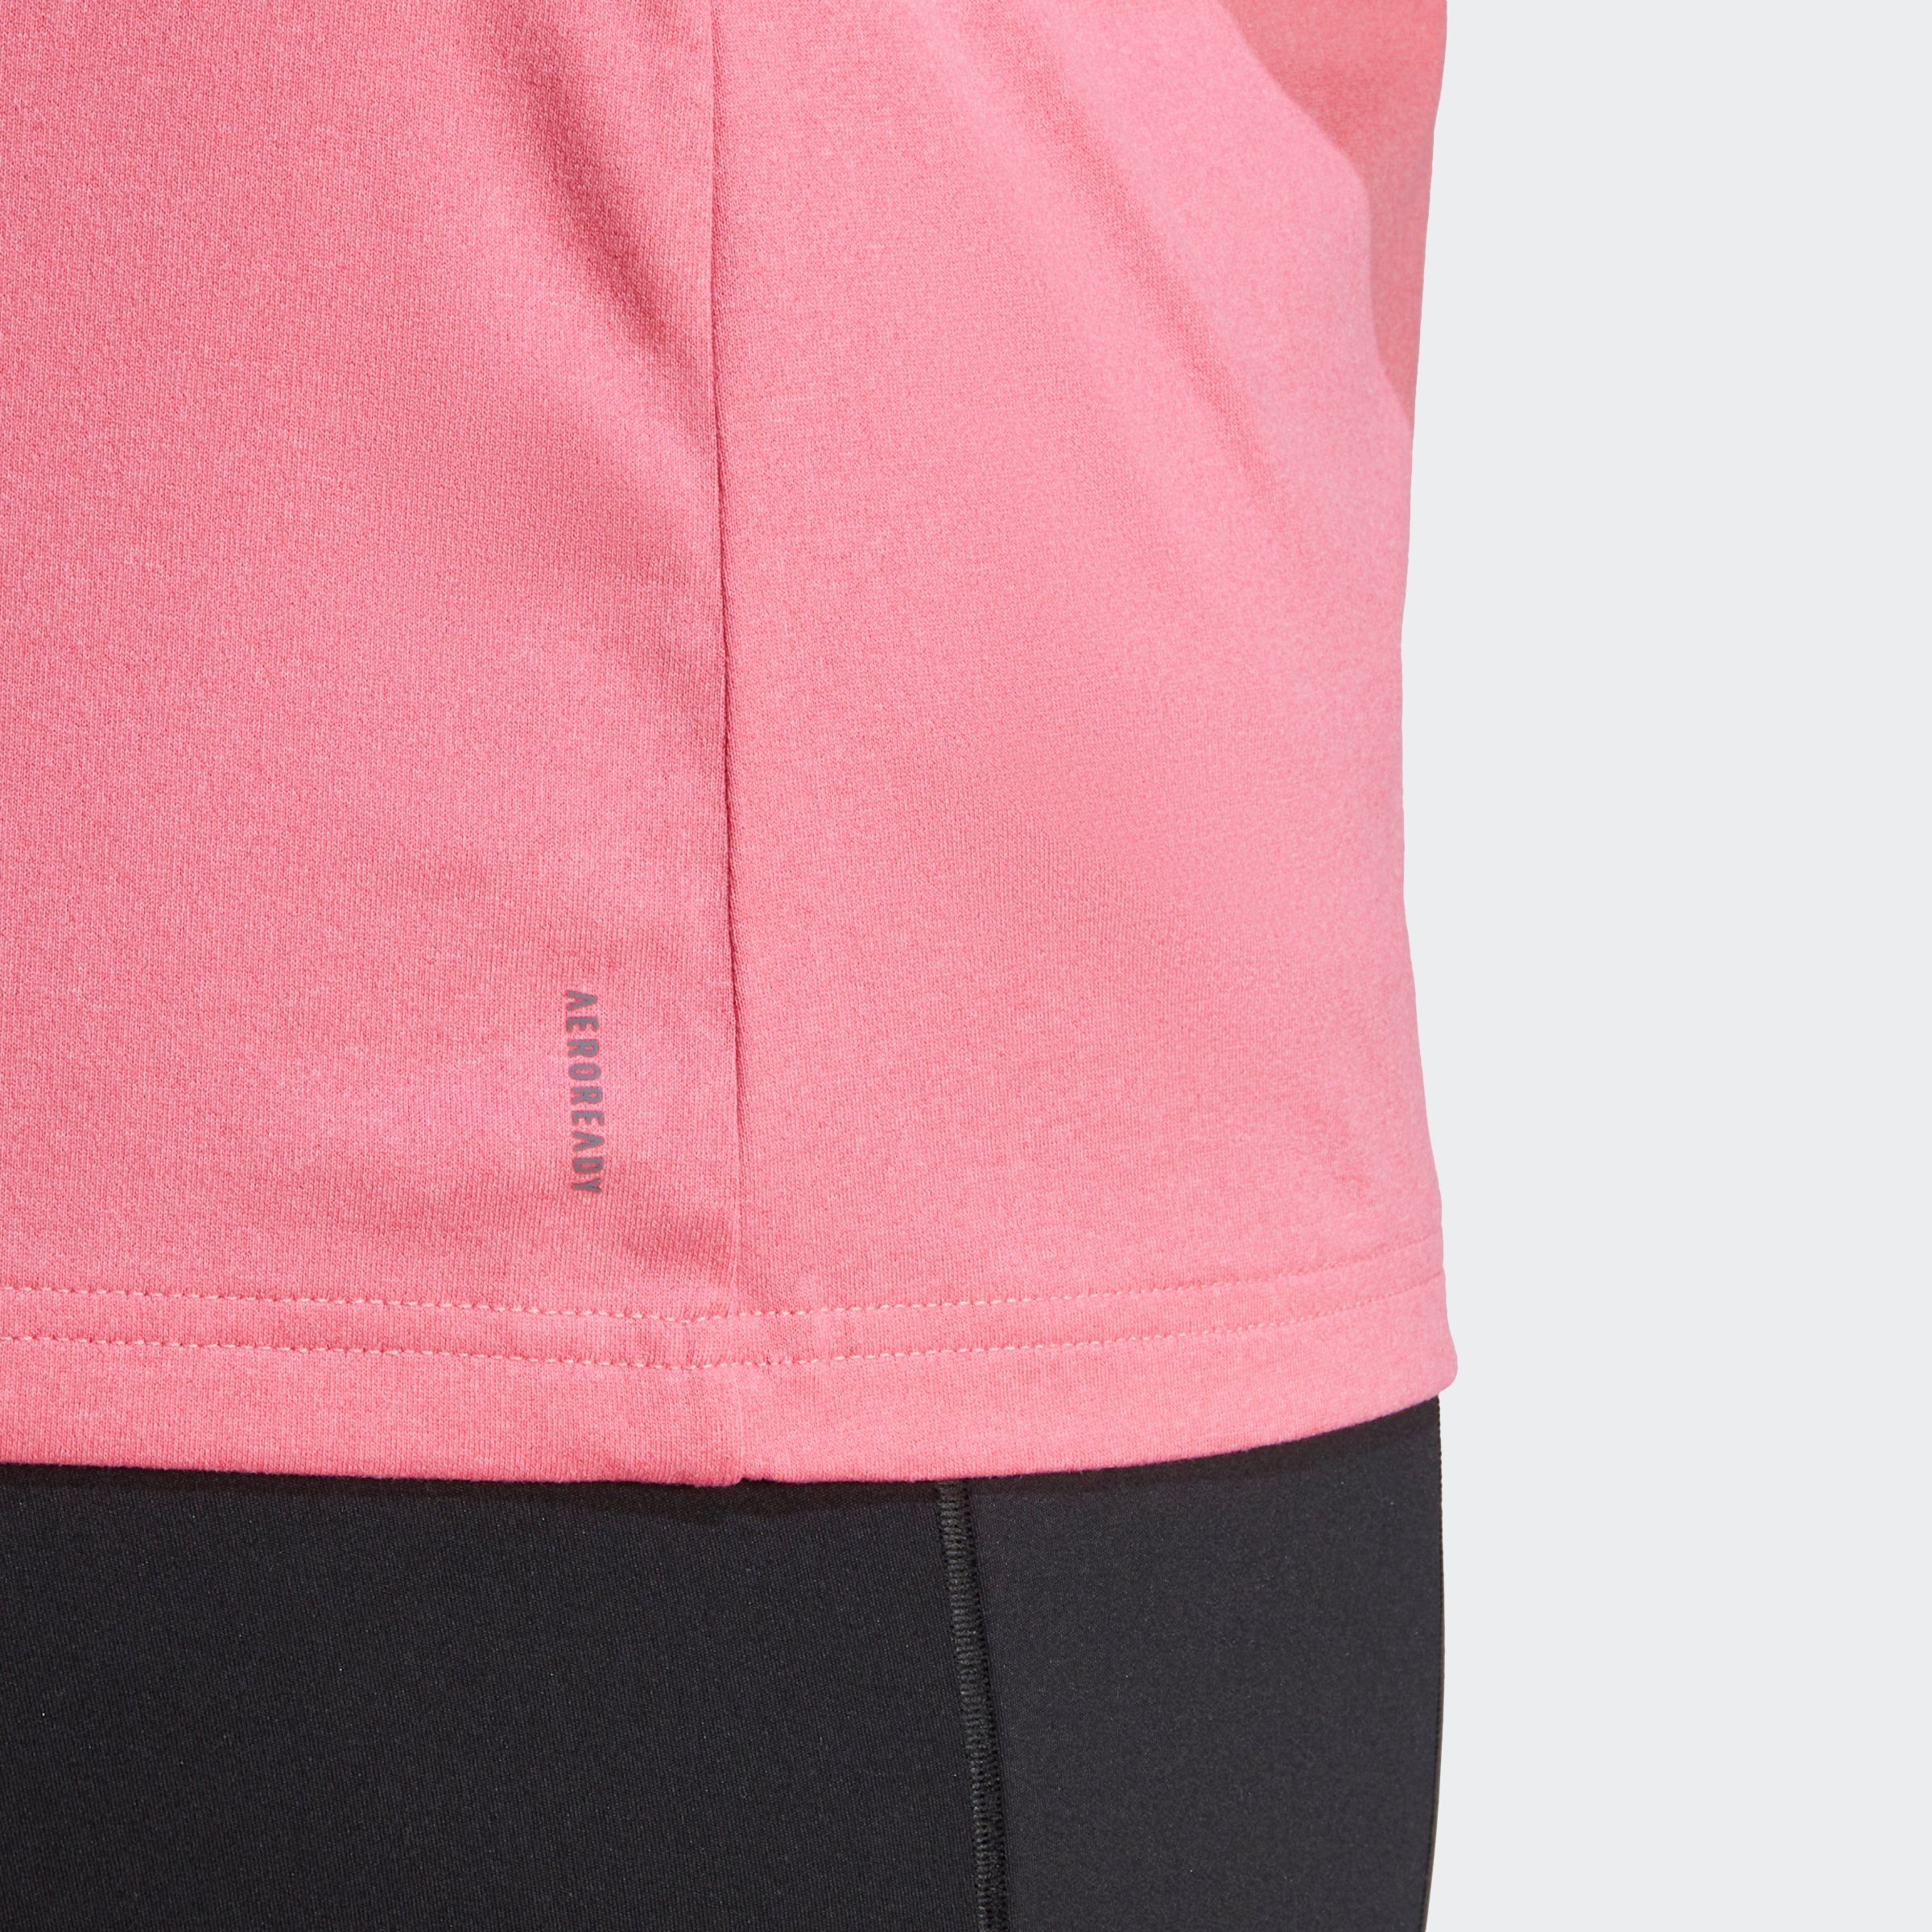 ESSENTIALS – T-Shirt adidas Performance Fusion Pink GROSSE GRÖSSEN 3-STREIFEN TRAIN White AEROREADY /